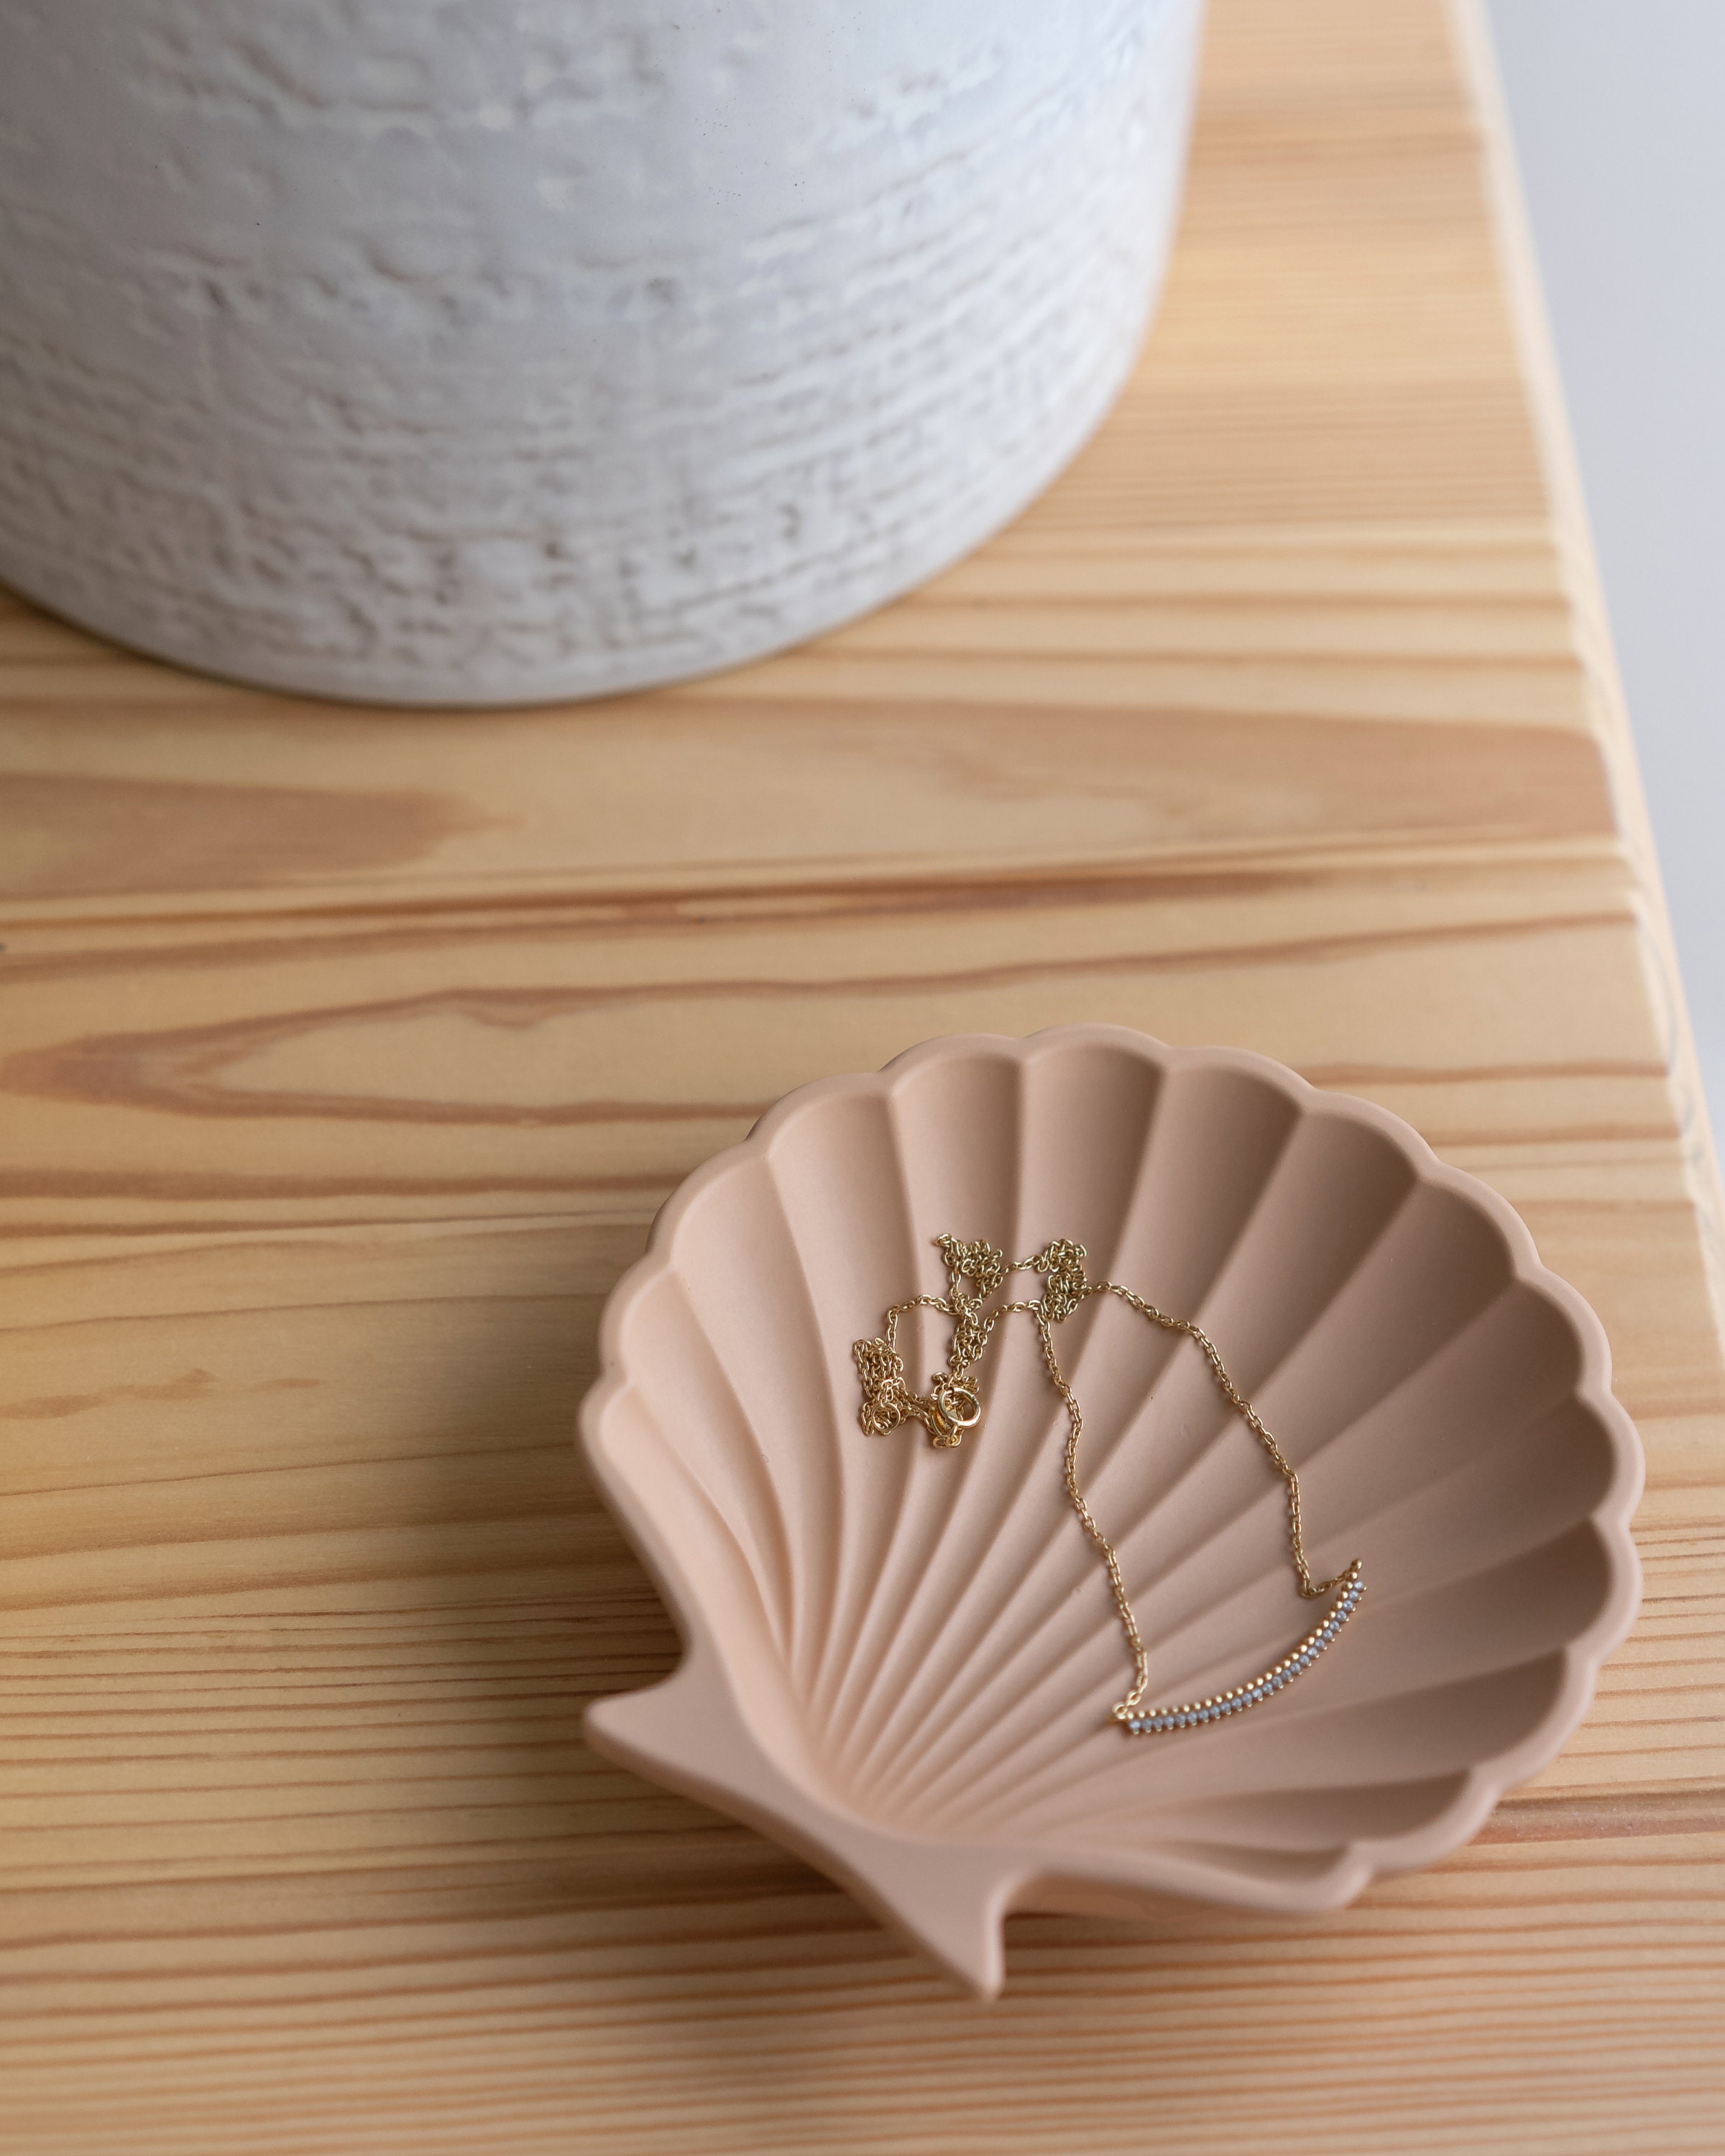 Sea Shell Trinket Dish Jewelry Tray Coastal Decor Pastel